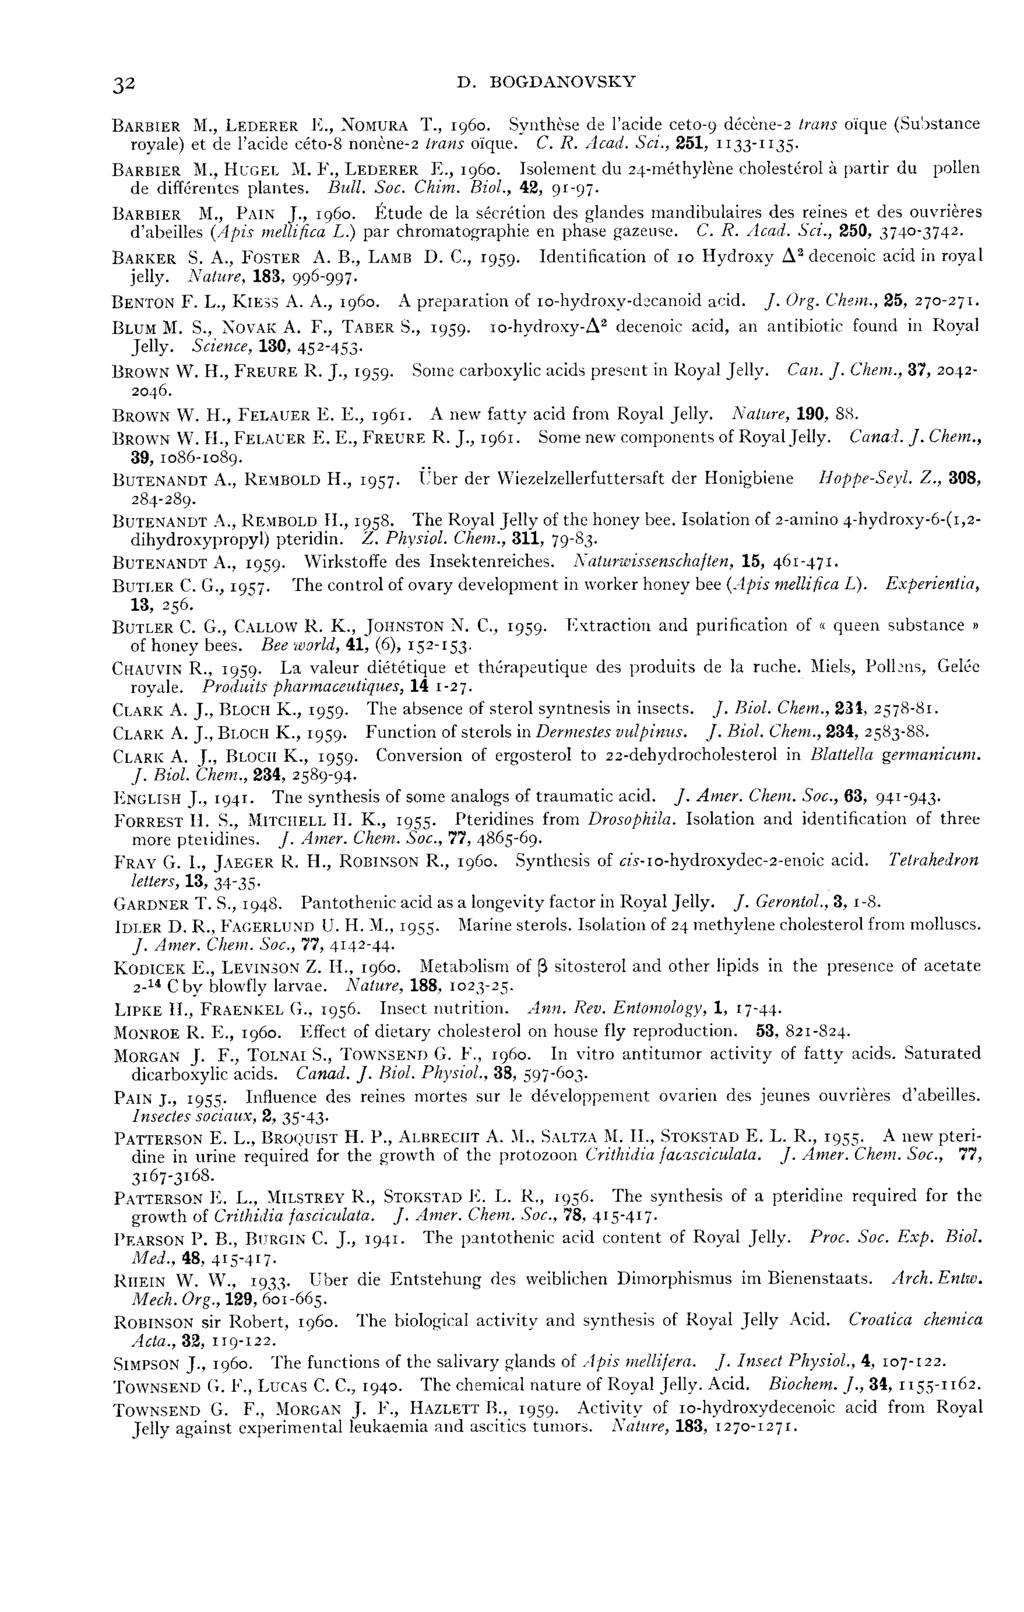 BARBIER M., LEDERER l s., :VoMURA T., 1960. Synthèse de l acide ceto 9 décène 2 trans oïque (Substance royale) et de l acide céto8 nonène 2 lrans oïque. C. R. Acad. Sci., 251, II33 II35.